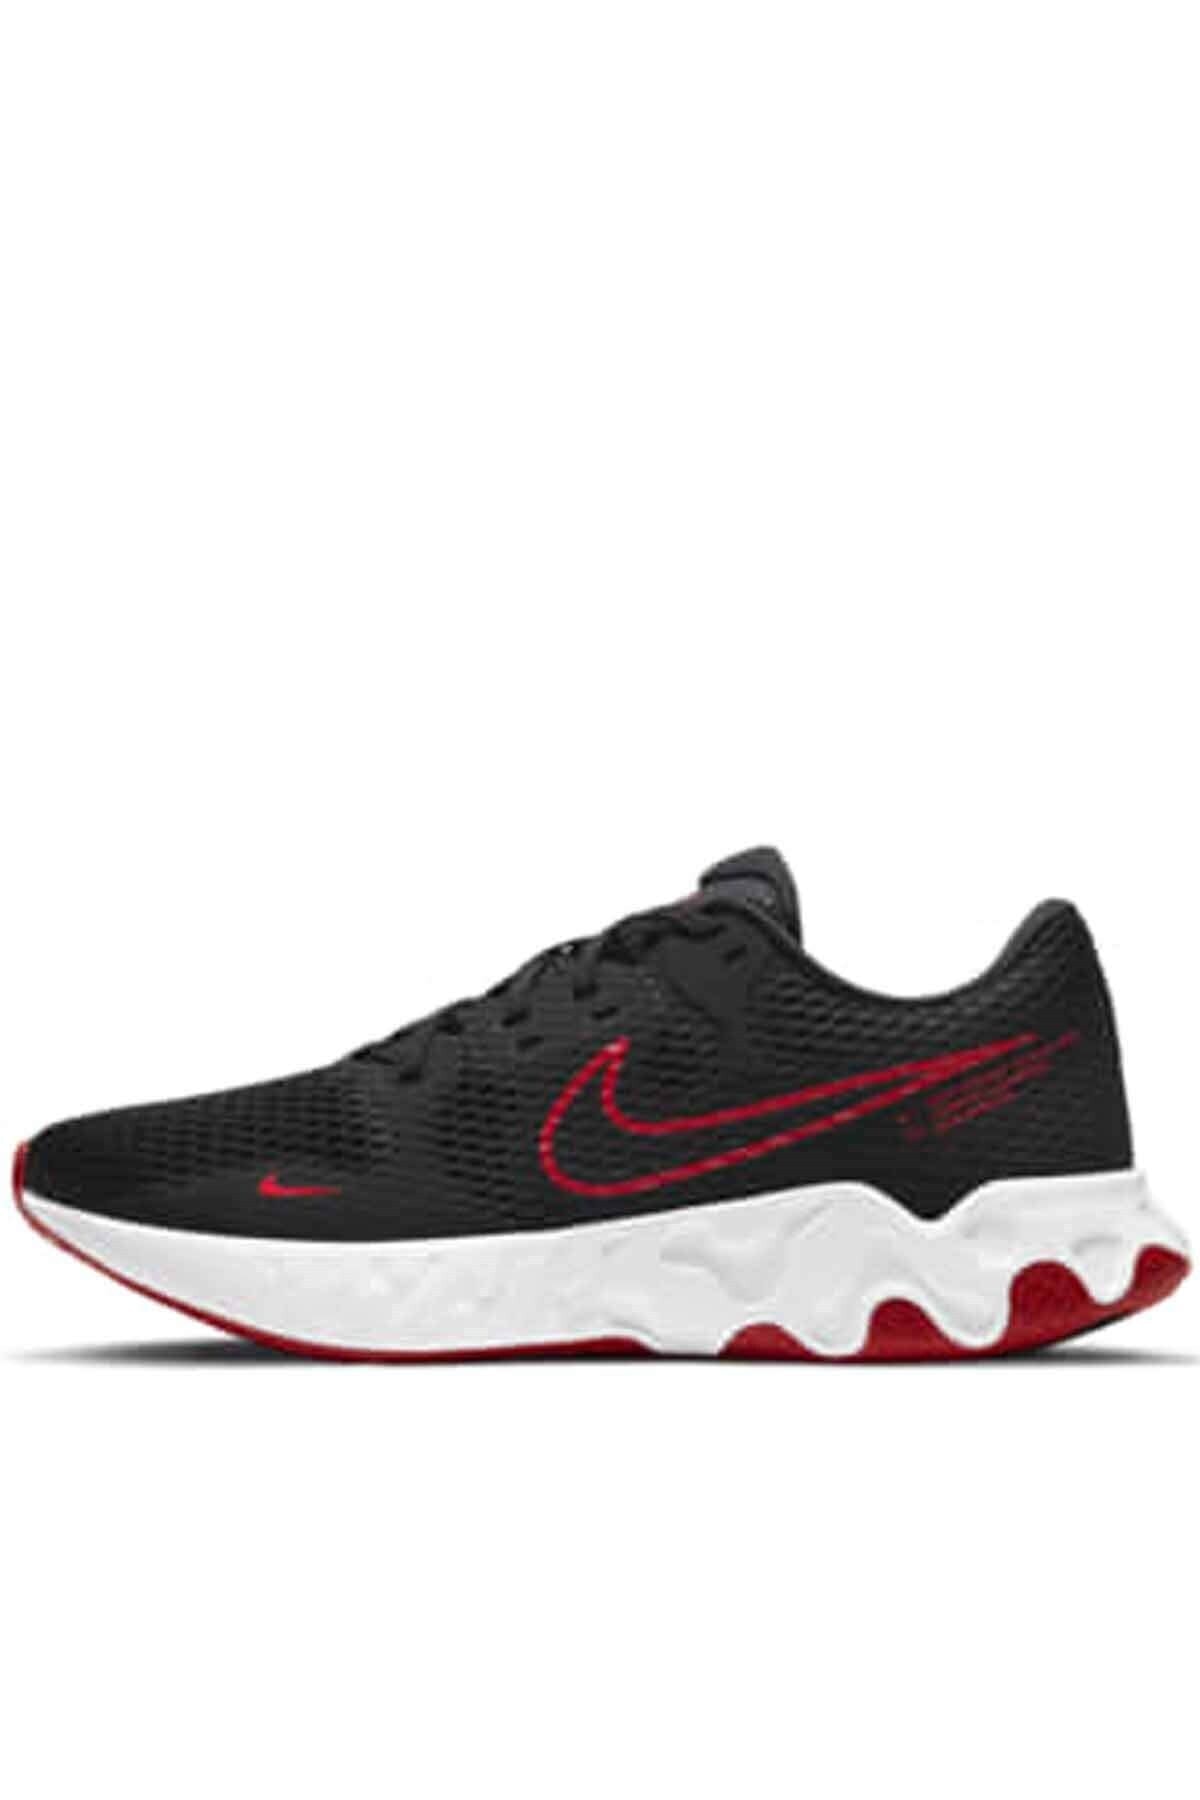 Nike Renew Ride 2 Erkek Yürüyüş Koşu Ayakkabı Cu3507-003-siyah